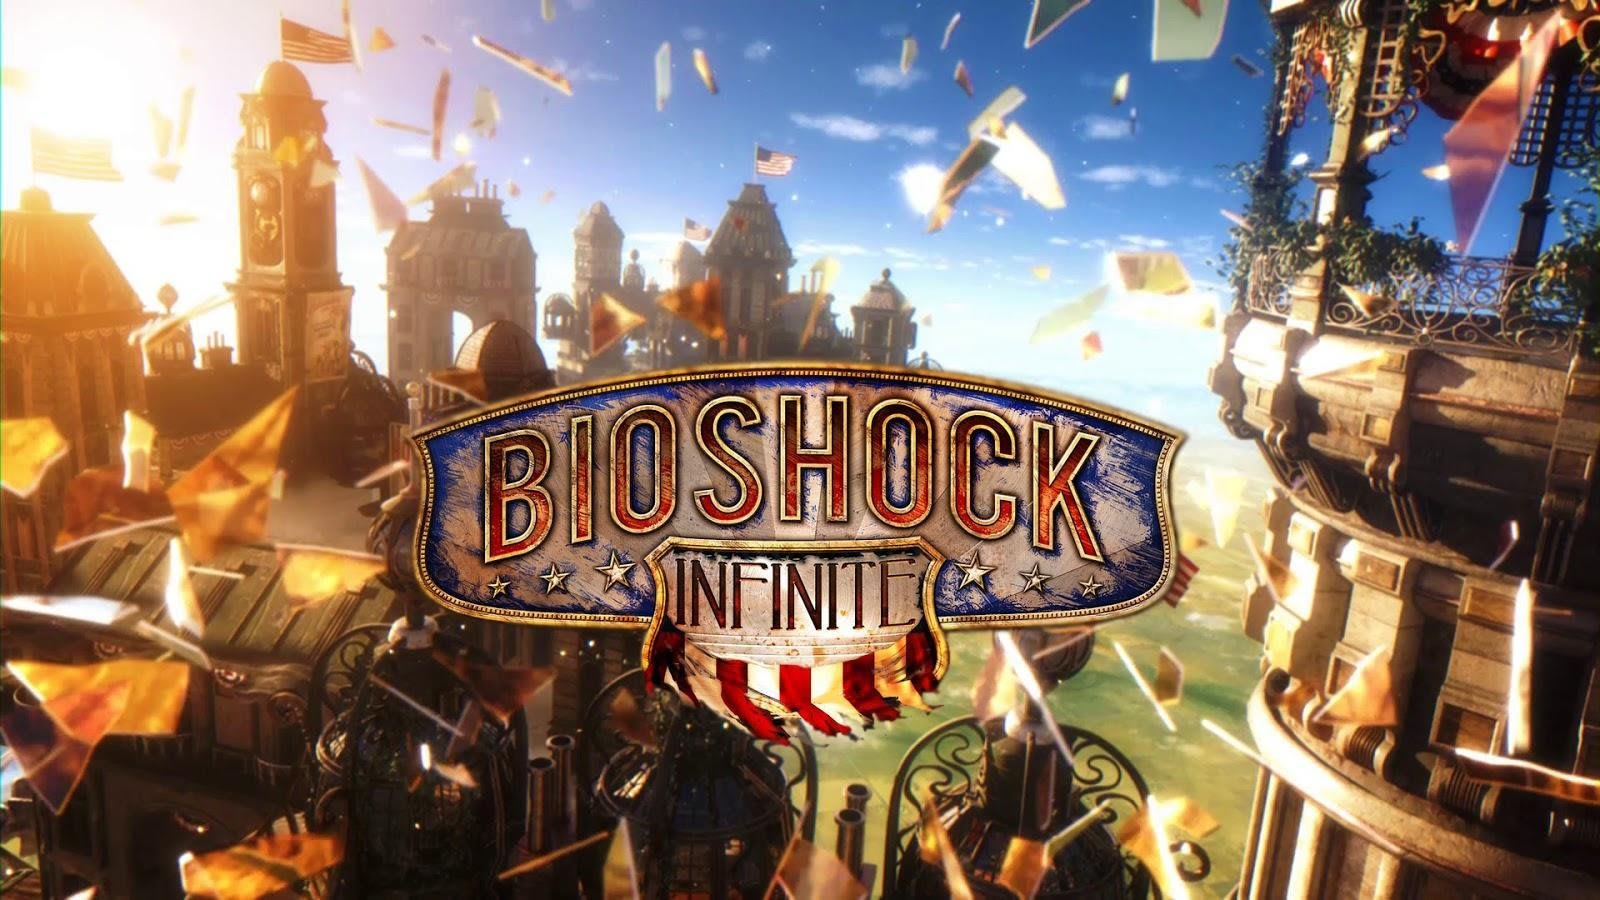 Bioshock Infinite is still a masterpiece 